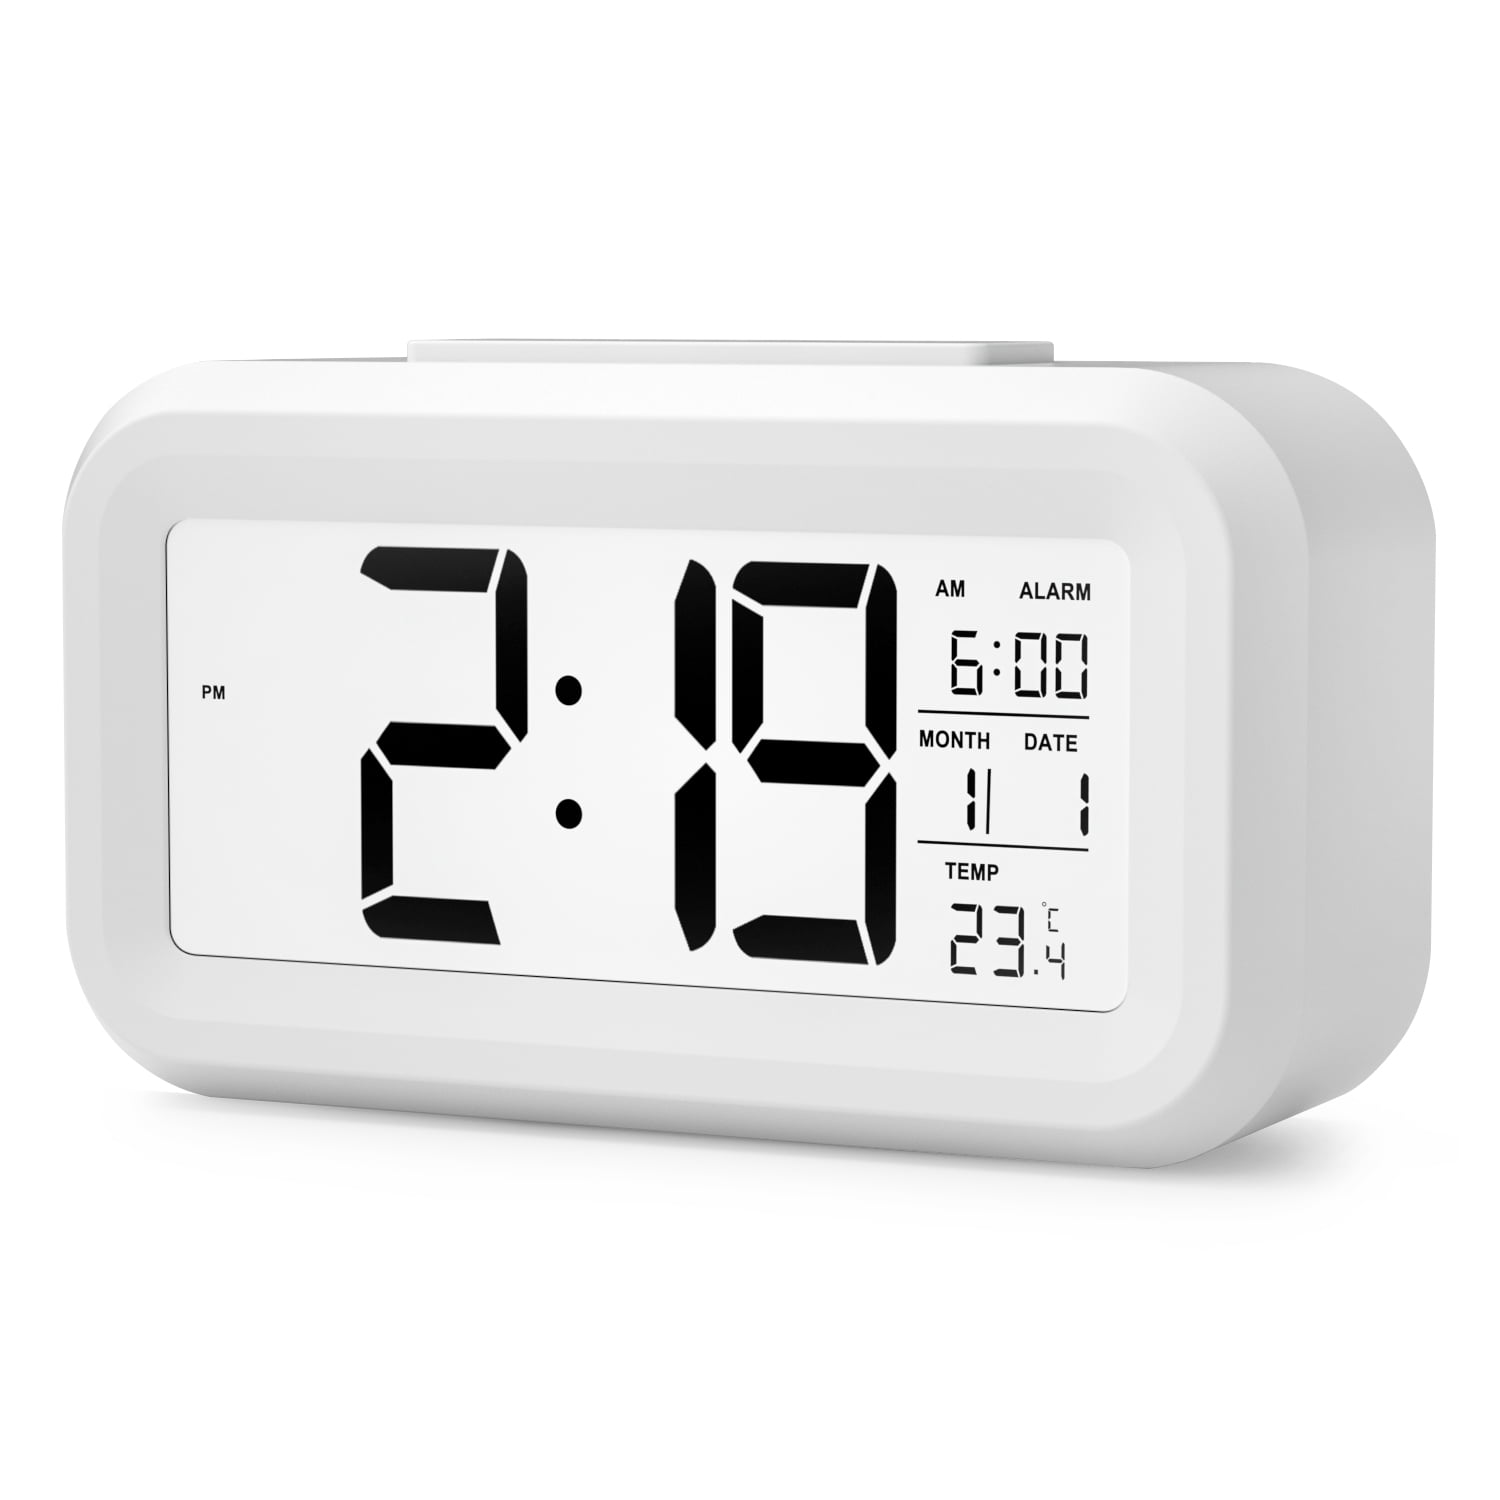 HeQiao Digital Wall Clocks Large Decorative LCD Alarm Clock Black w/Silver 